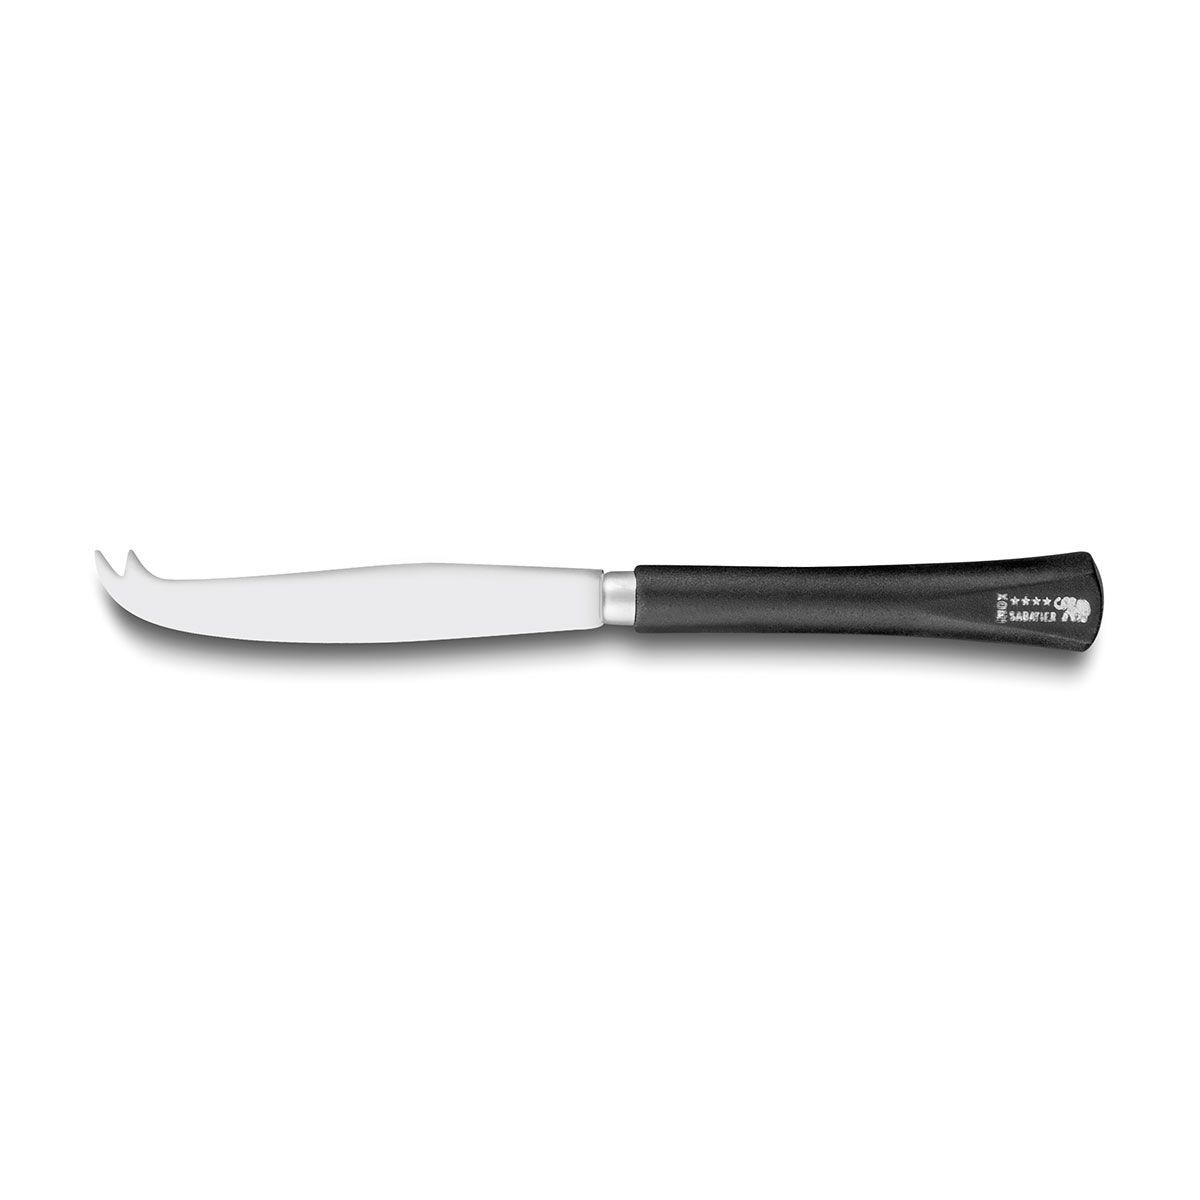 Les couteaux Chien®  Marque de couteaux de table Thiers-Issard